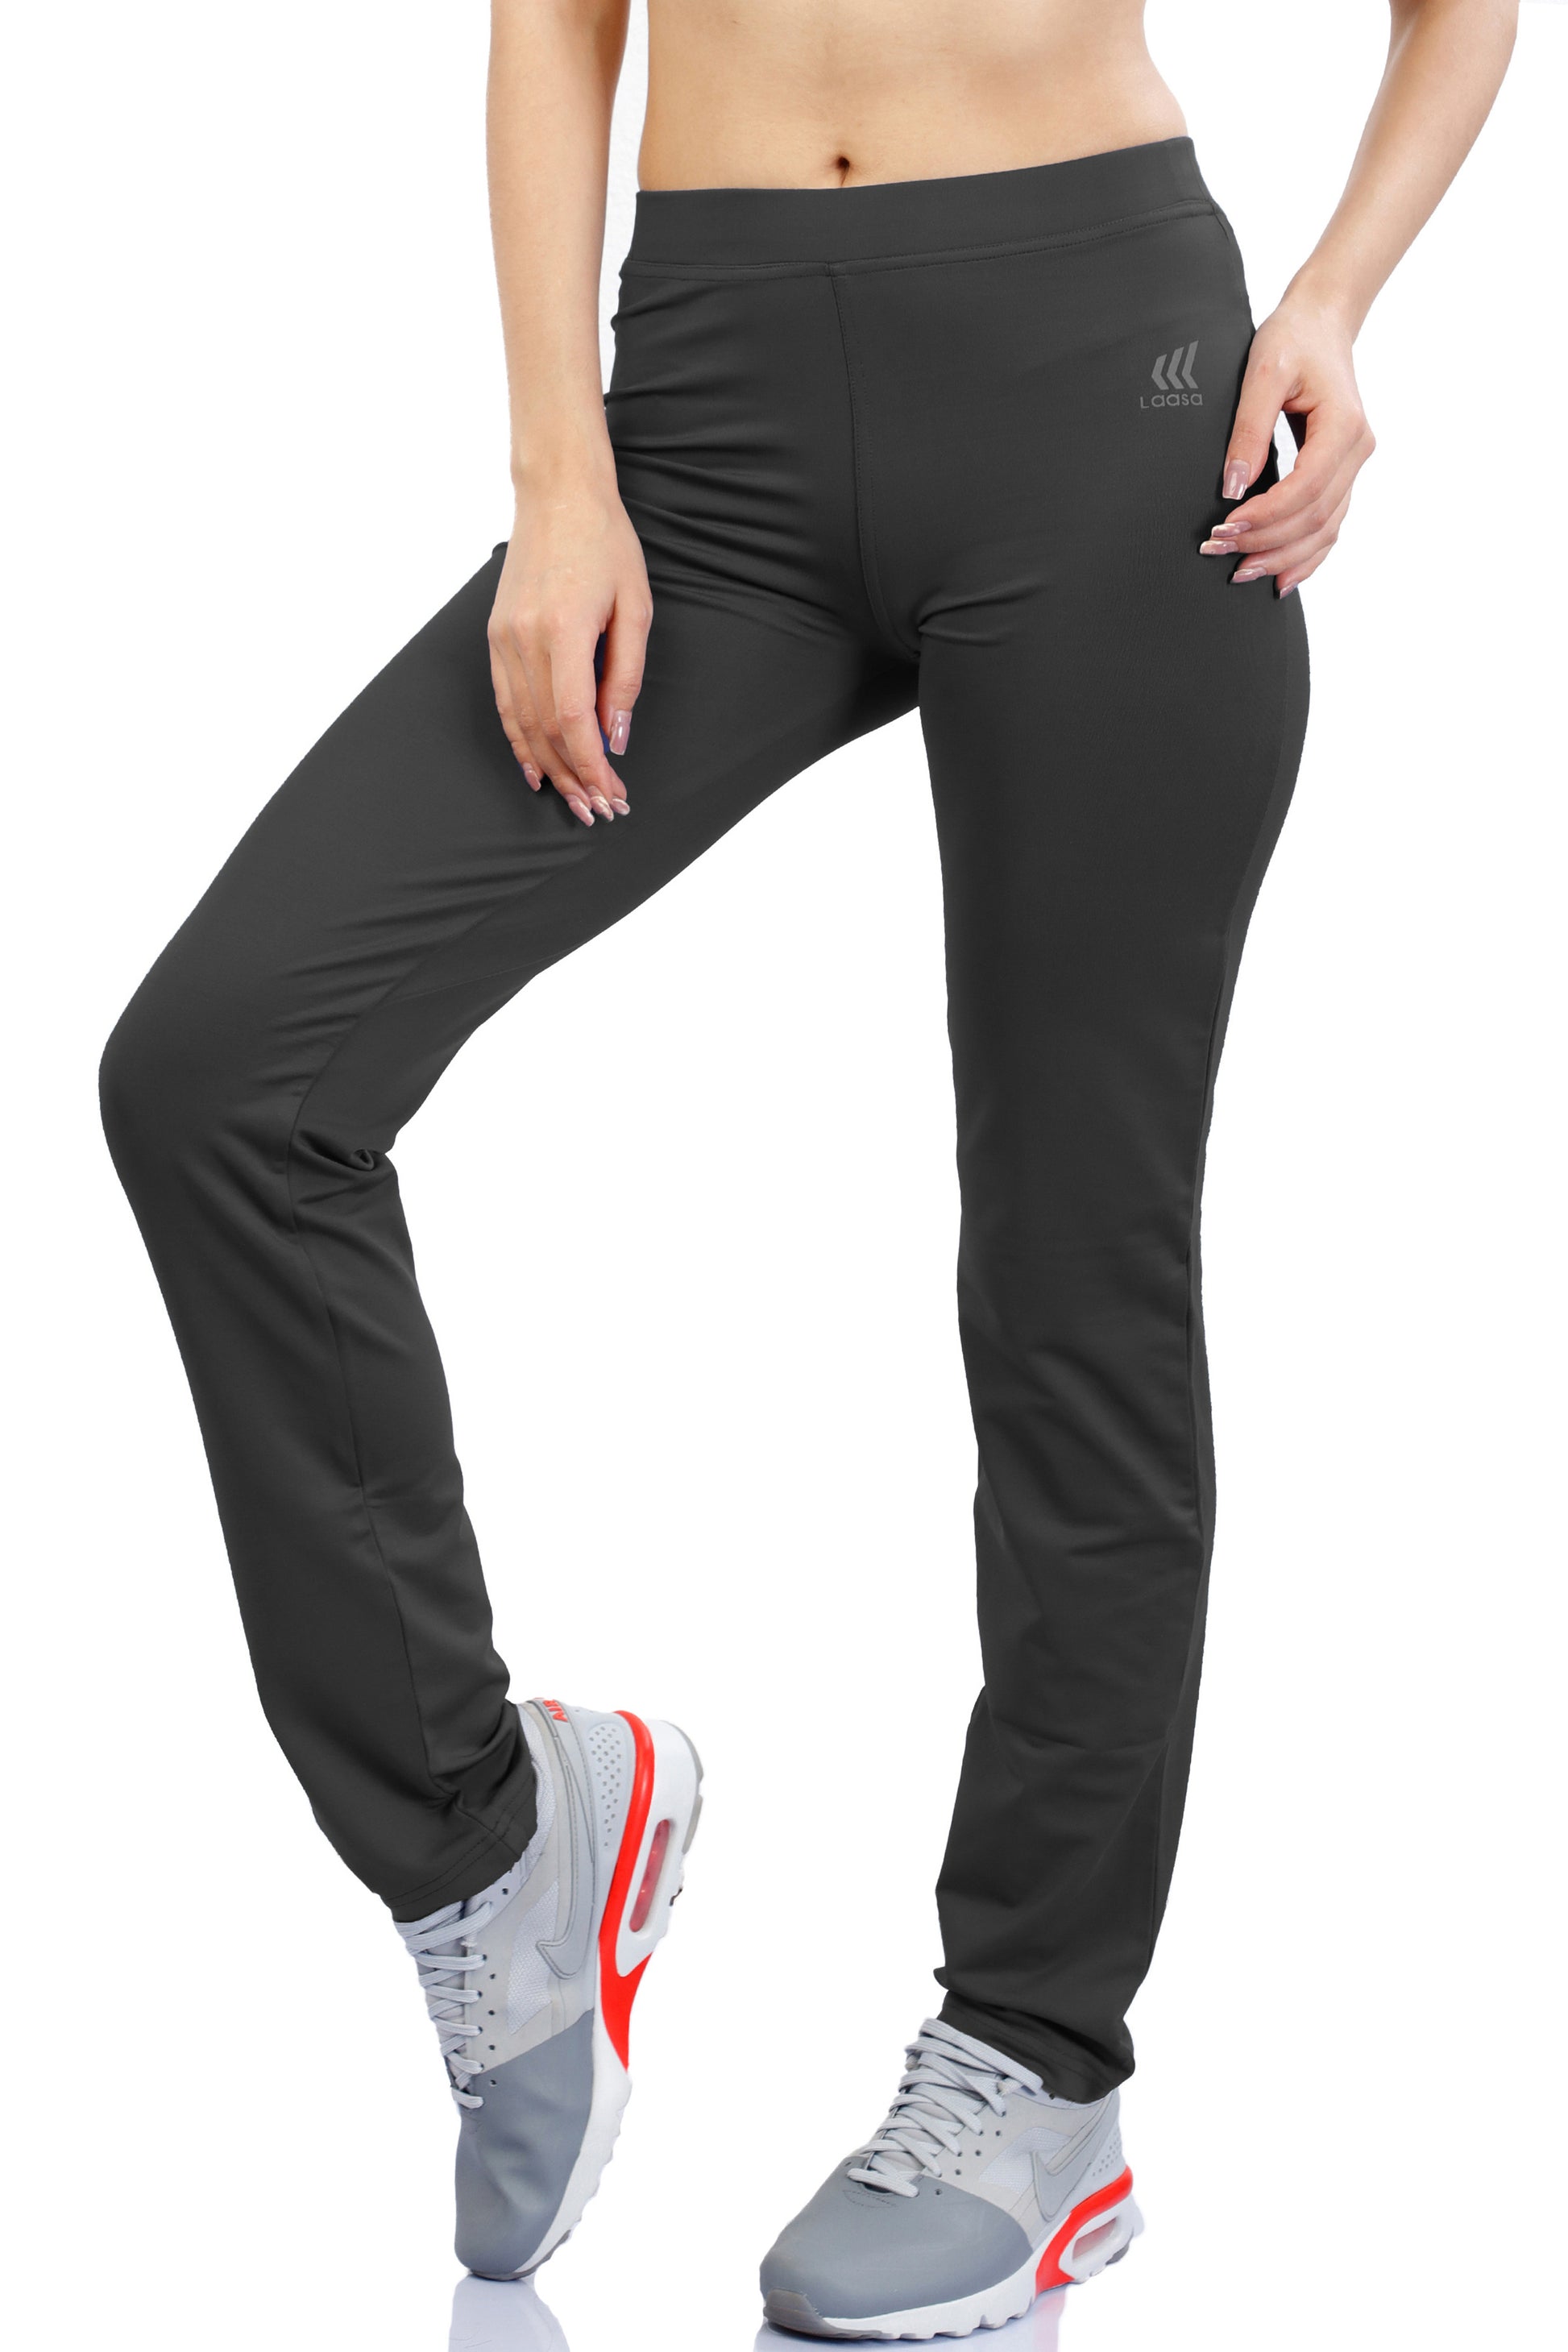 Decathlon Sports Wear Solid Dri fit / Sports Jackets for Women